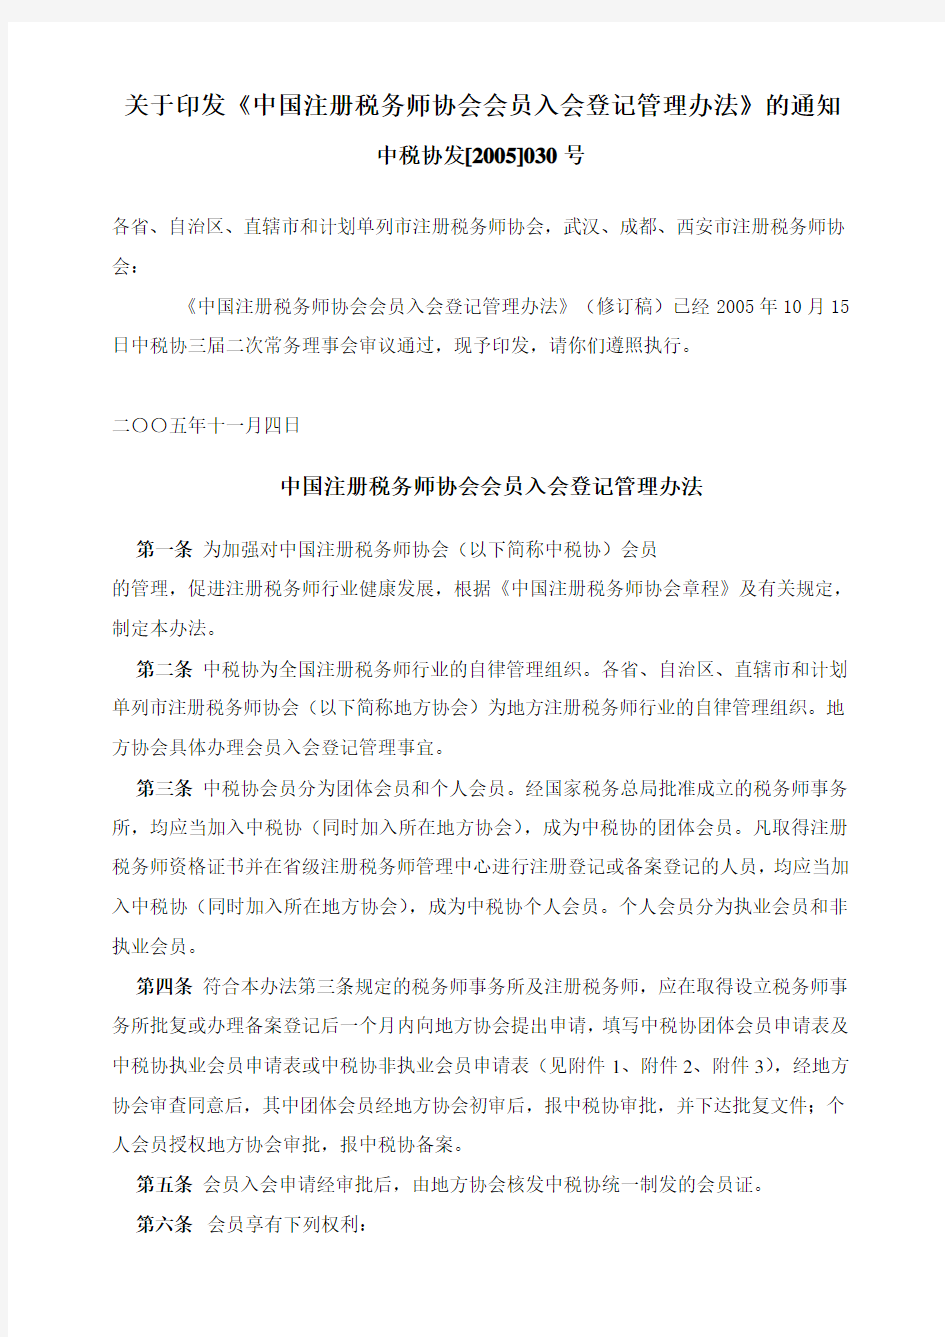 中国注册税务师协会会员入会登记管理办法